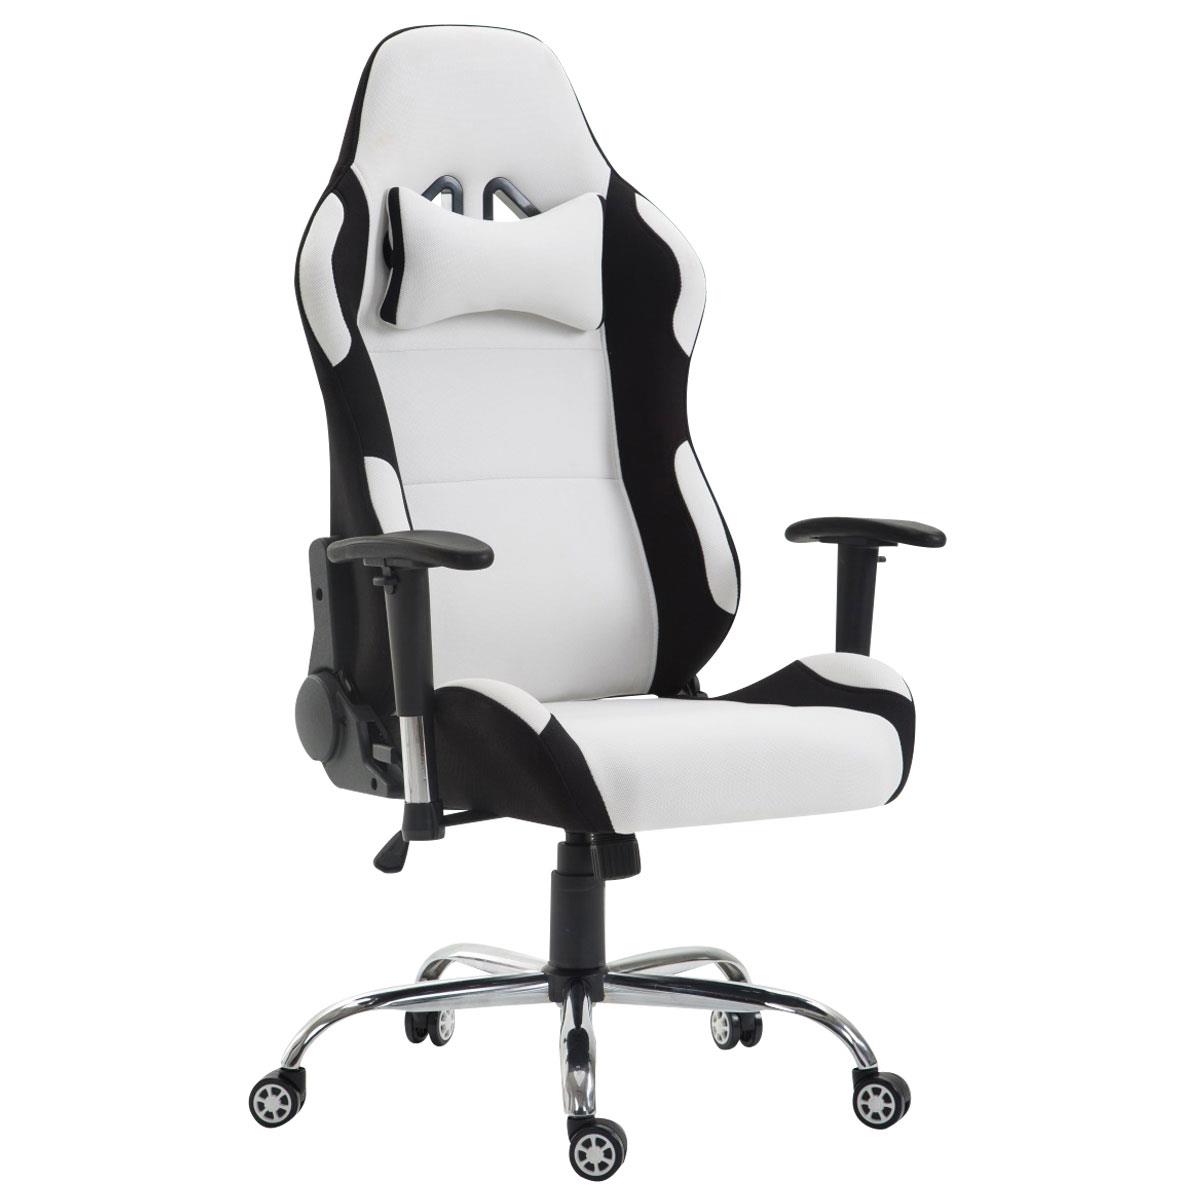 Gaming-Stuhl ROSBY STOF. Sportliches Design und hoher Komfort, Farbe Weiß